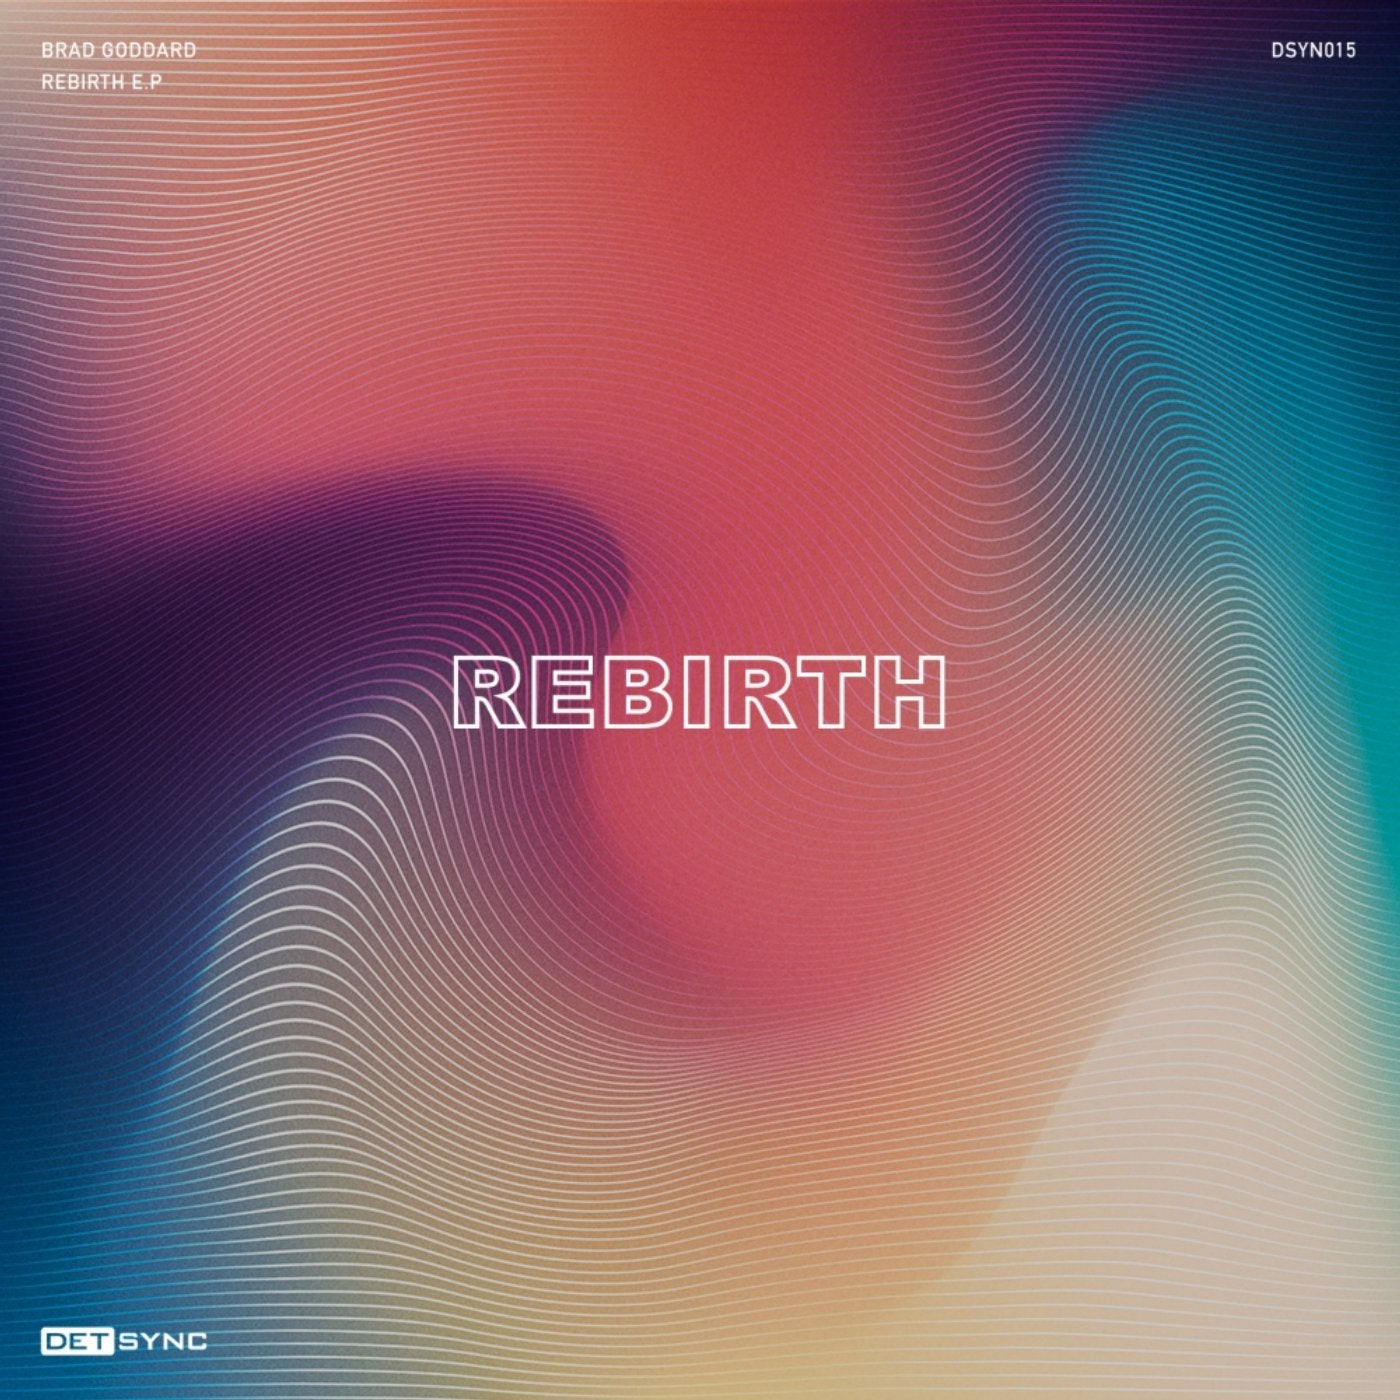 Rebirth E.P